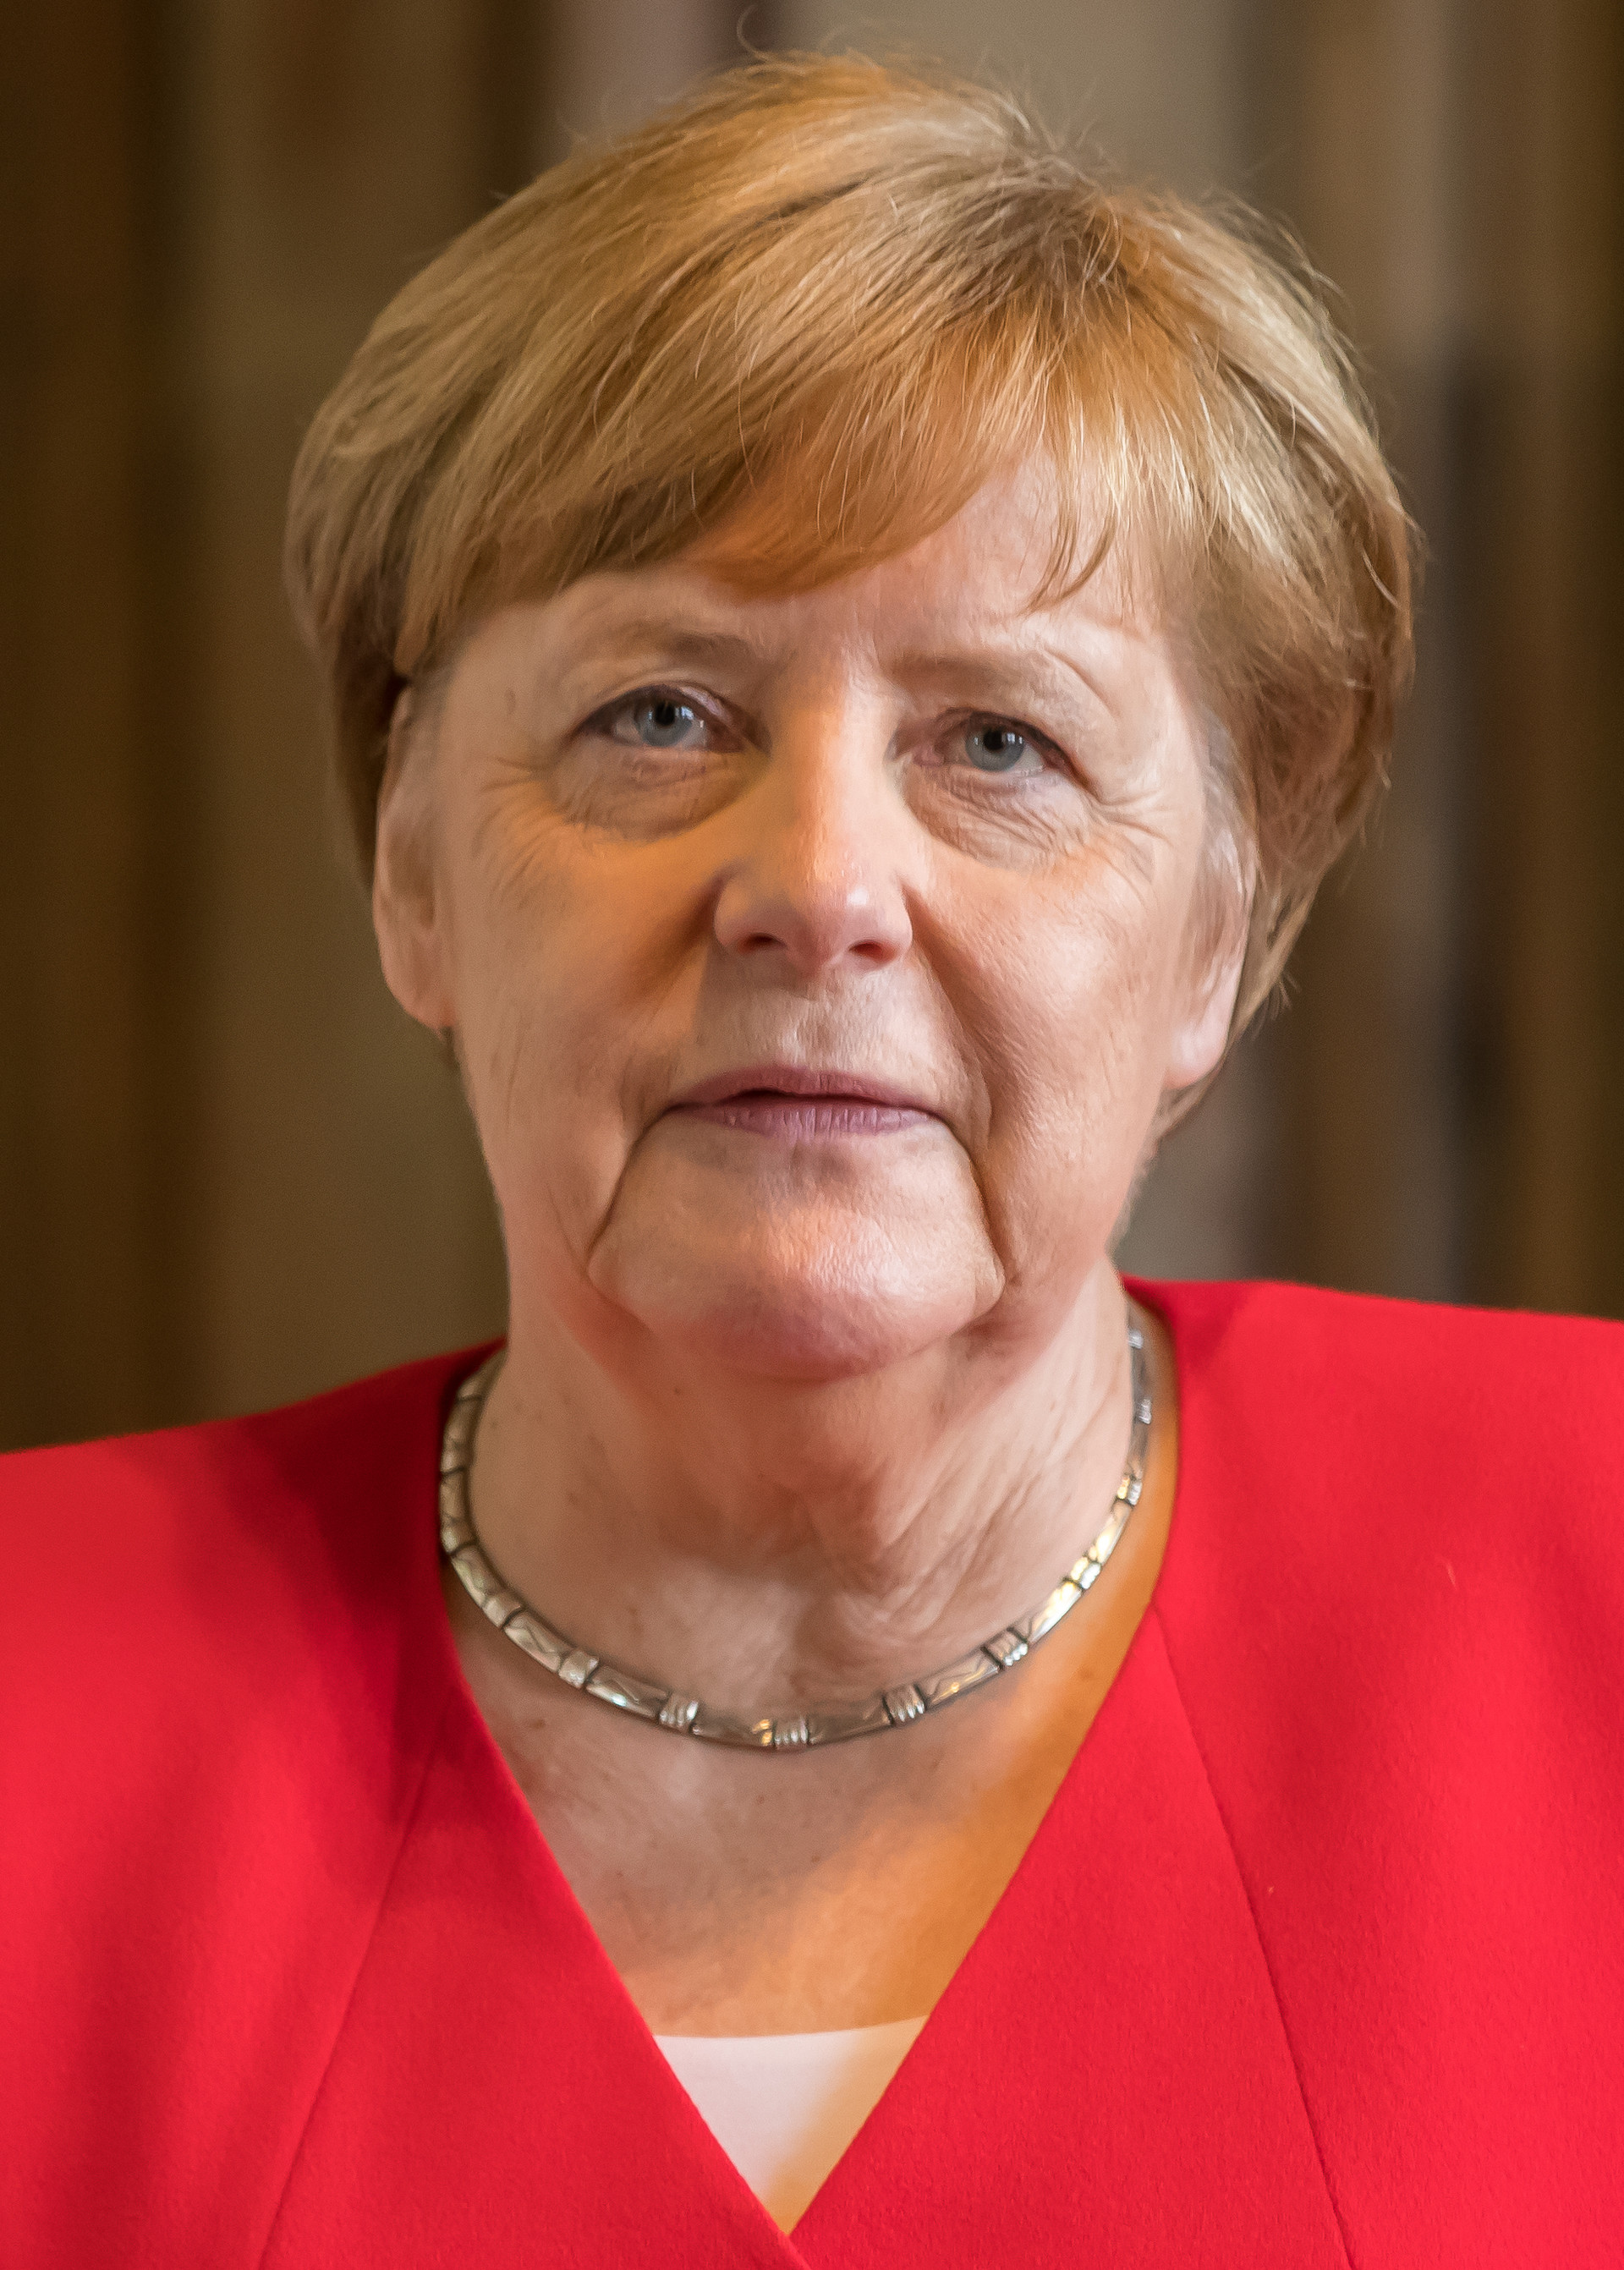 Angela Merkel - Wikipedia